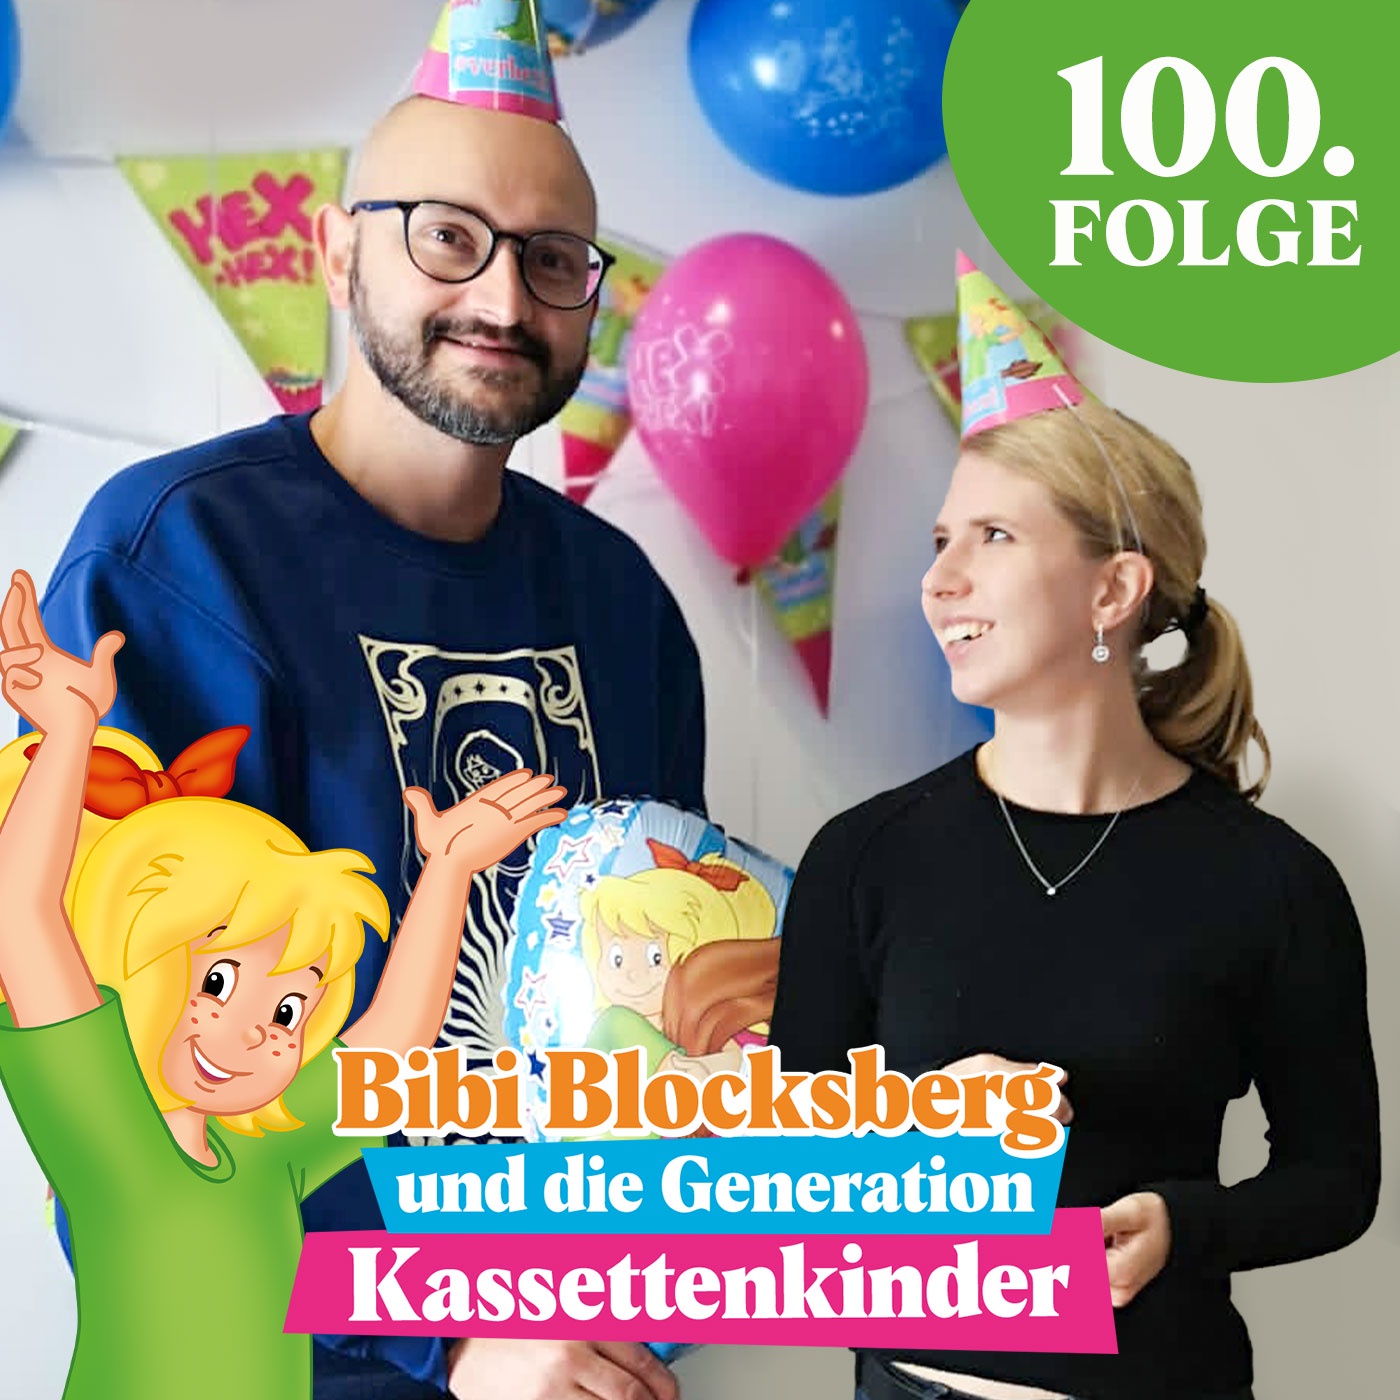 #100 - XL-Jubiläumsfolge zur 100. Ausgabe des Podcasts inkl. Interview mit Bibi Blocksberg